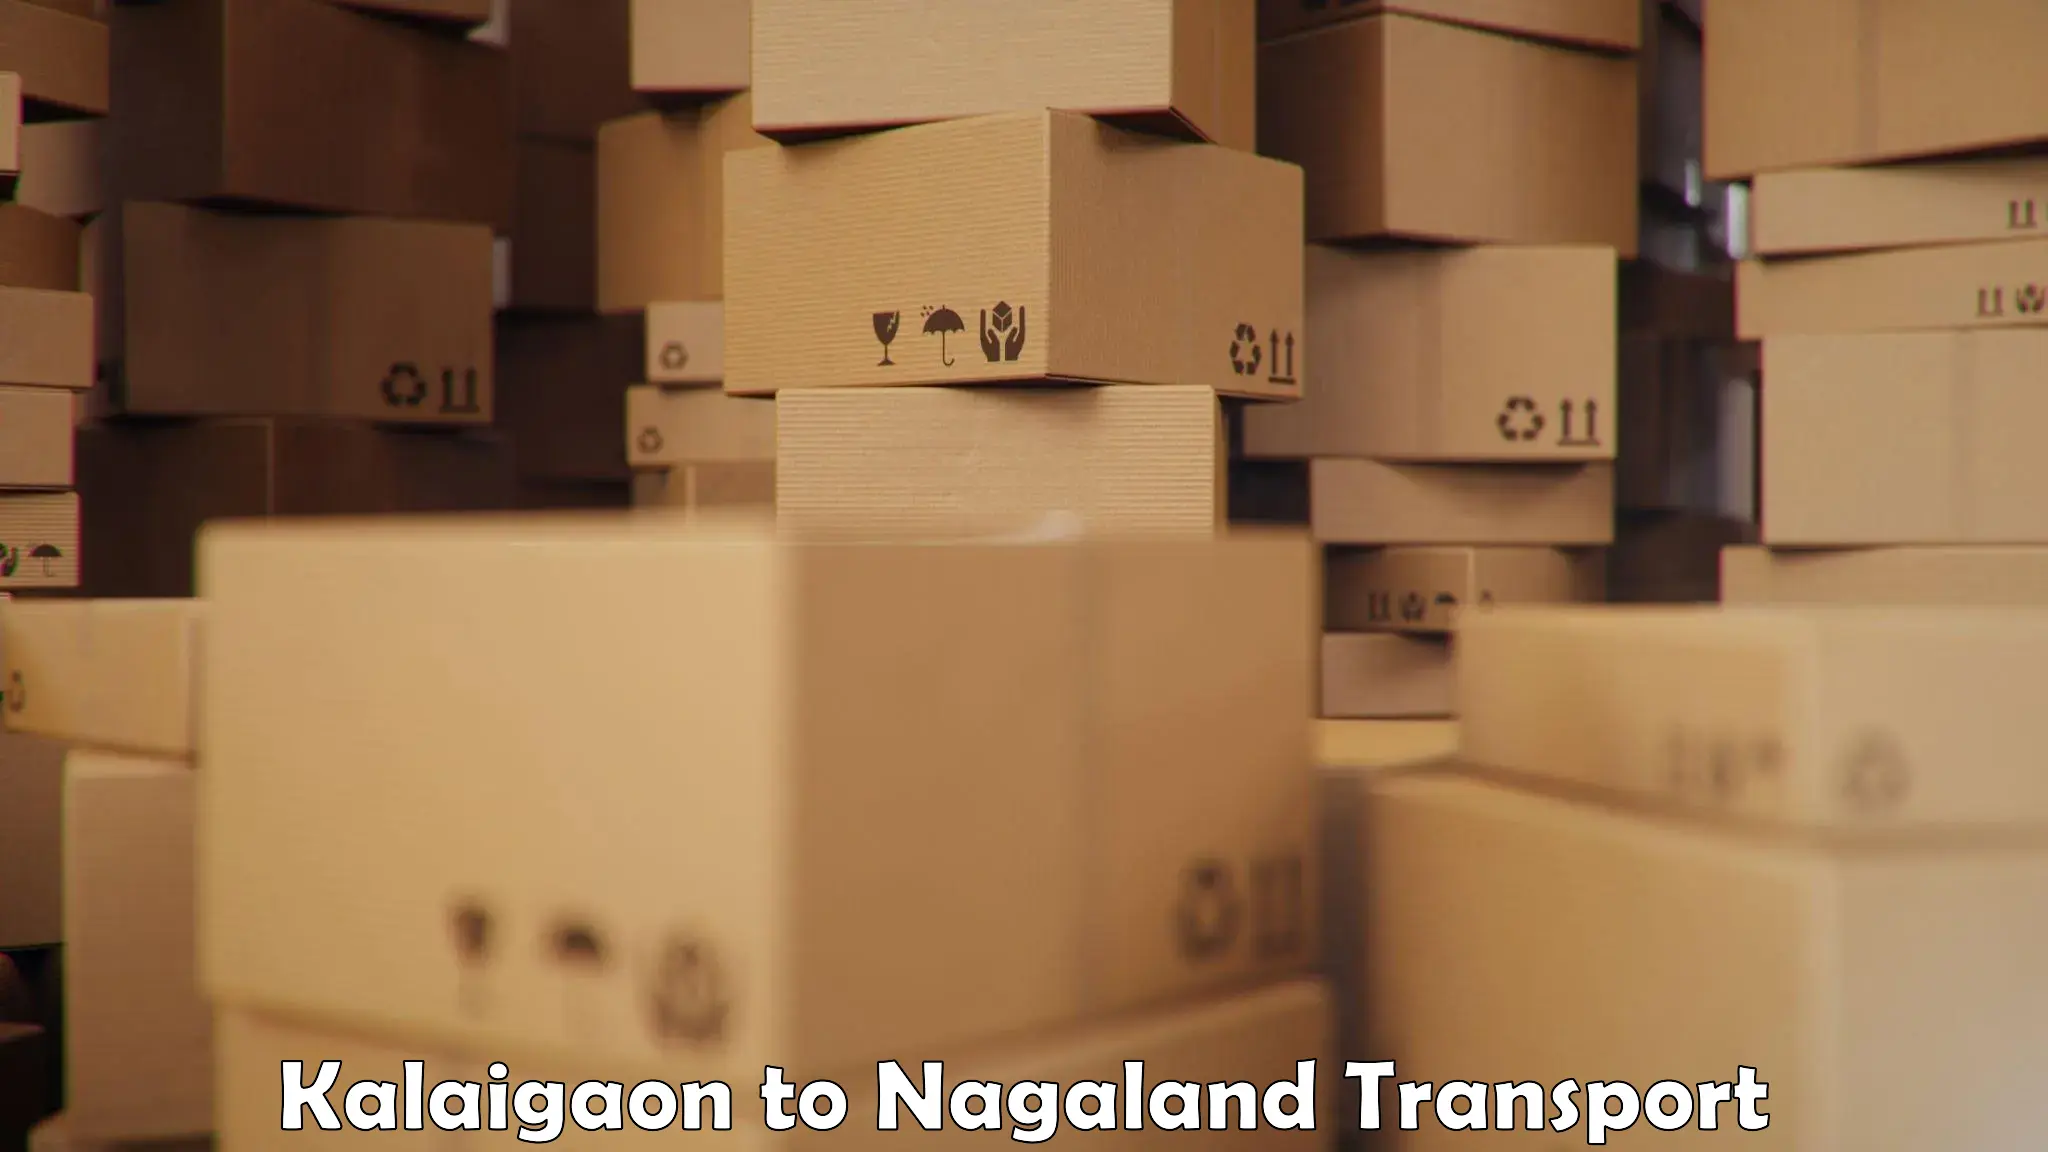 Express transport services Kalaigaon to Nagaland